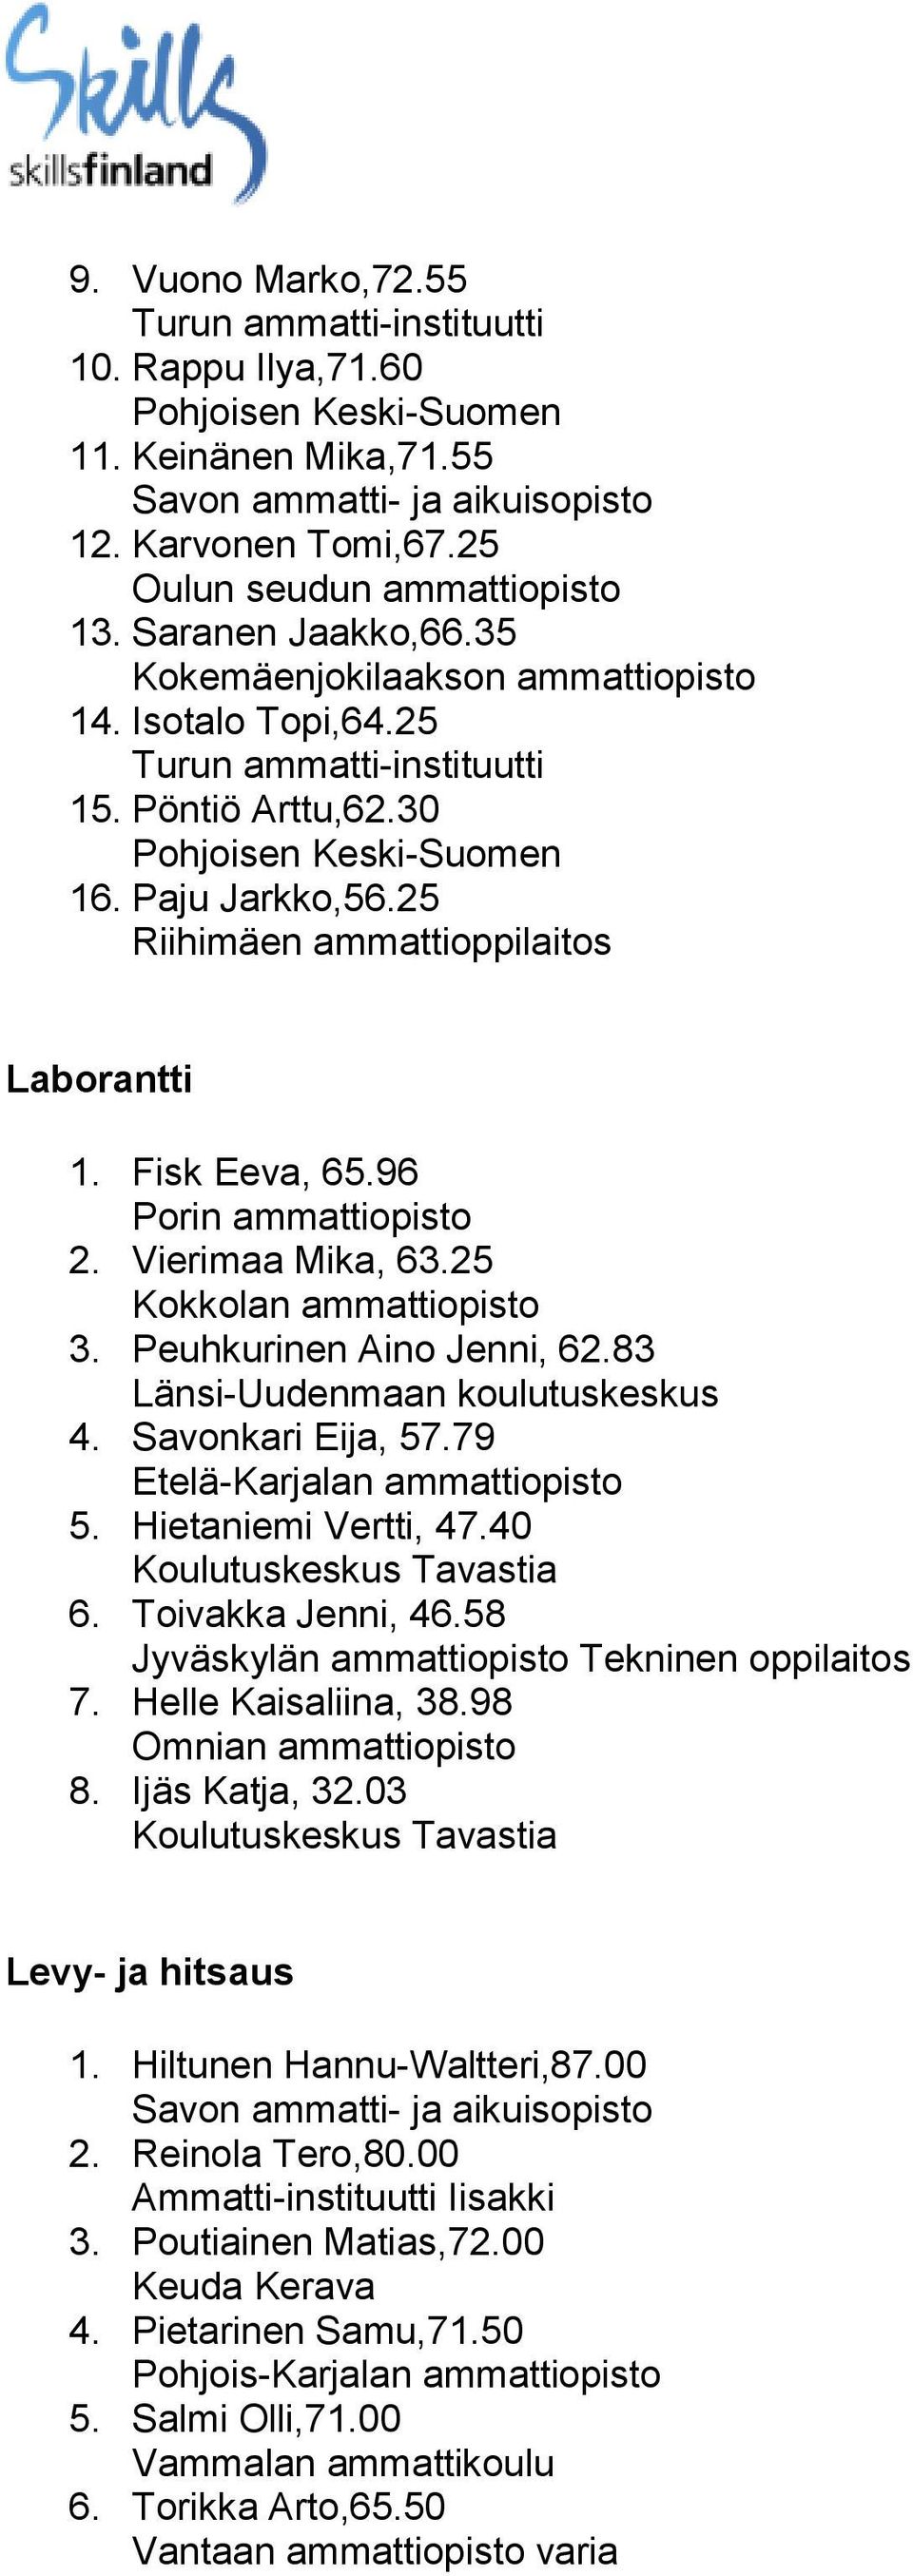 83 Länsi-Uudenmaan koulutuskeskus 4. Savonkari Eija, 57.79 Etelä-Karjalan ammattiopisto 5. Hietaniemi Vertti, 47.40 Koulutuskeskus Tavastia 6. Toivakka Jenni, 46.